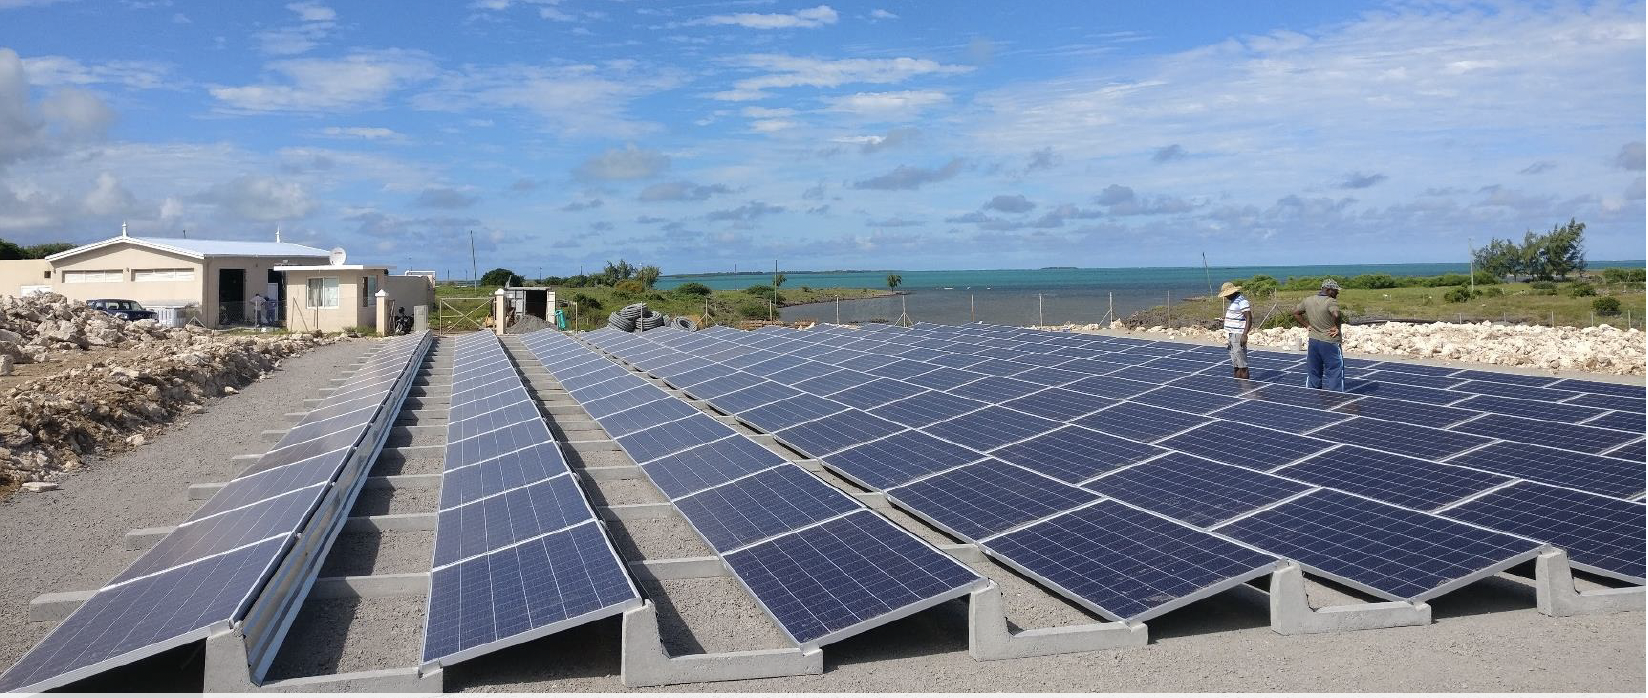 C’est la première unité de dessalement solaire de l’océan indien installée.